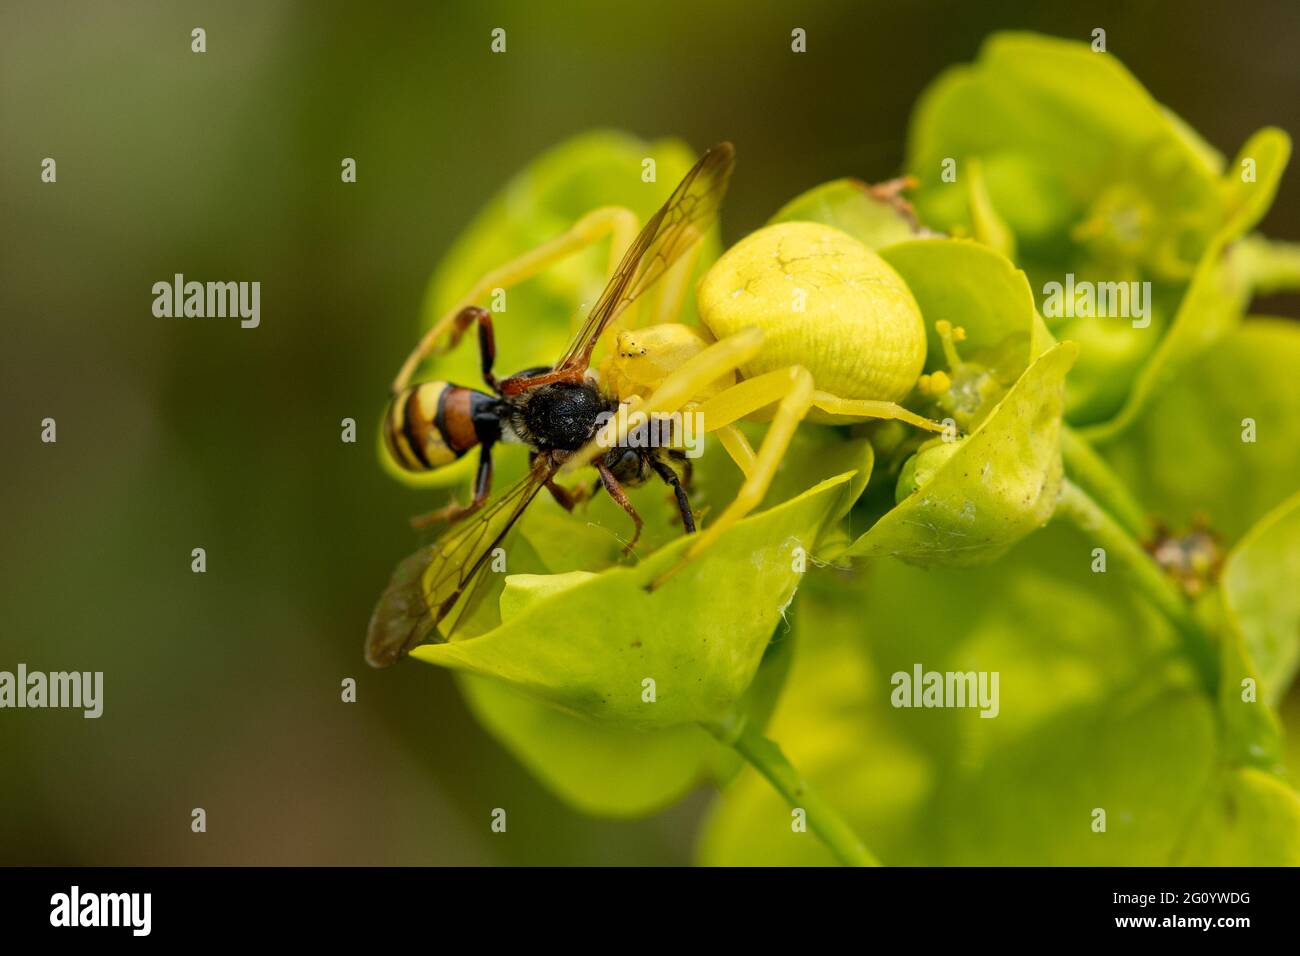 Blumenkrabbenspinne (Misumena vatia) nach dem Fang von Beute, einer einsamen Nomadenbiene, auf Holzspurgen, Großbritannien. Gelbe Spinne auf Blume getarnt. Stockfoto